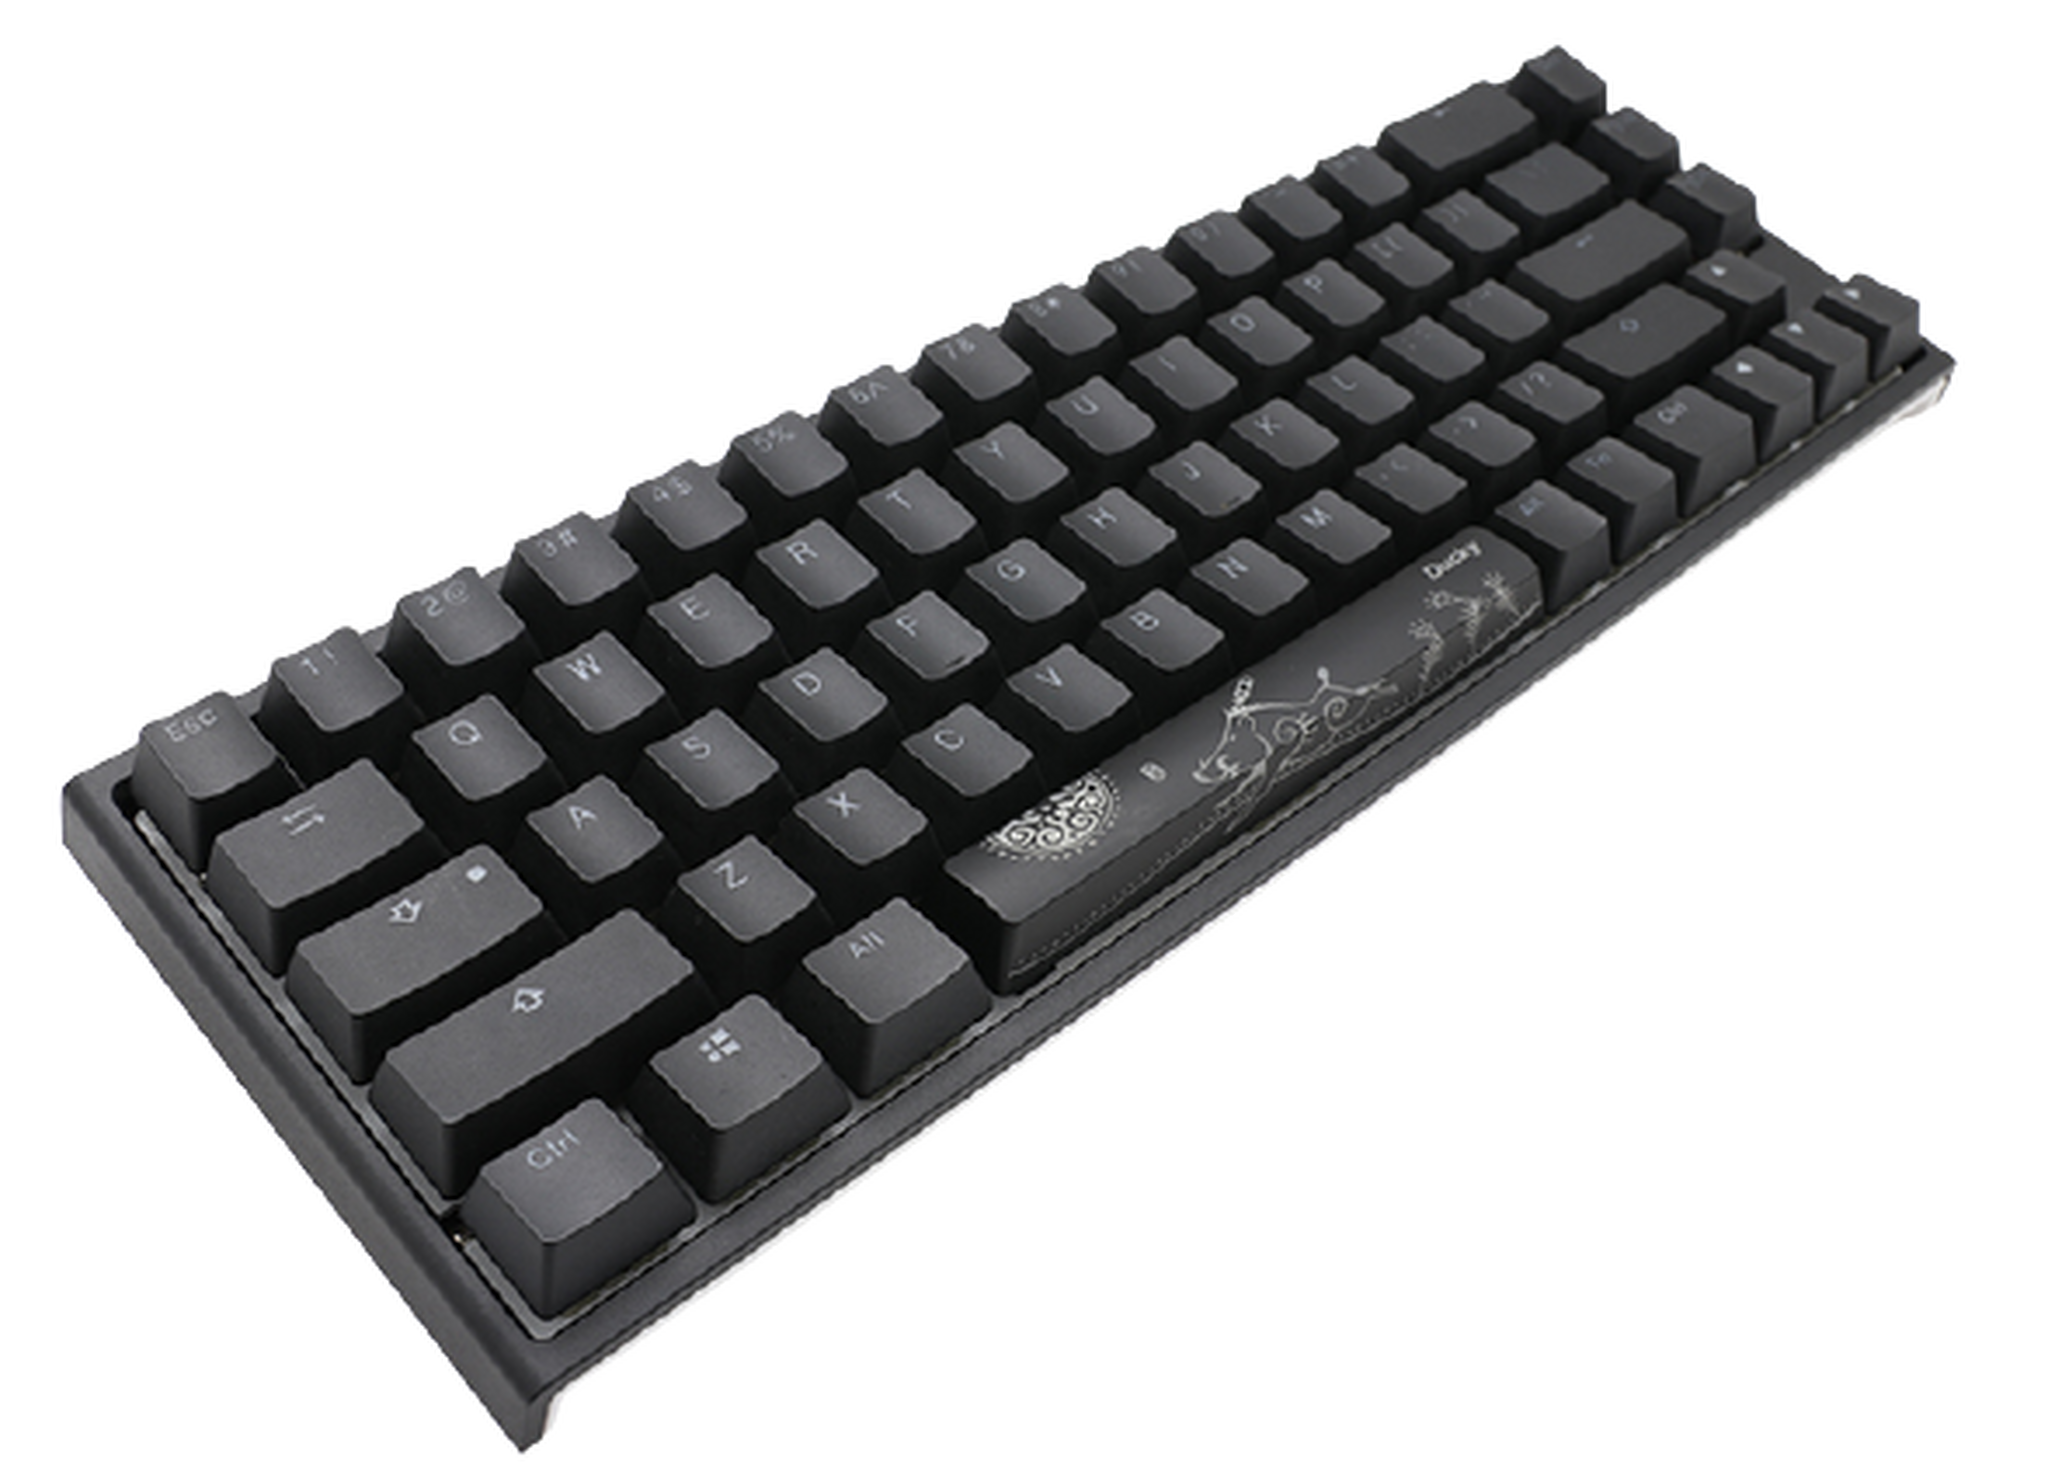 لوحة مفاتيح للألعاب داكي ون 2 اس-اف بمفاتيح ميكانيكية زرقاء وإضاءة ار-جي-بي